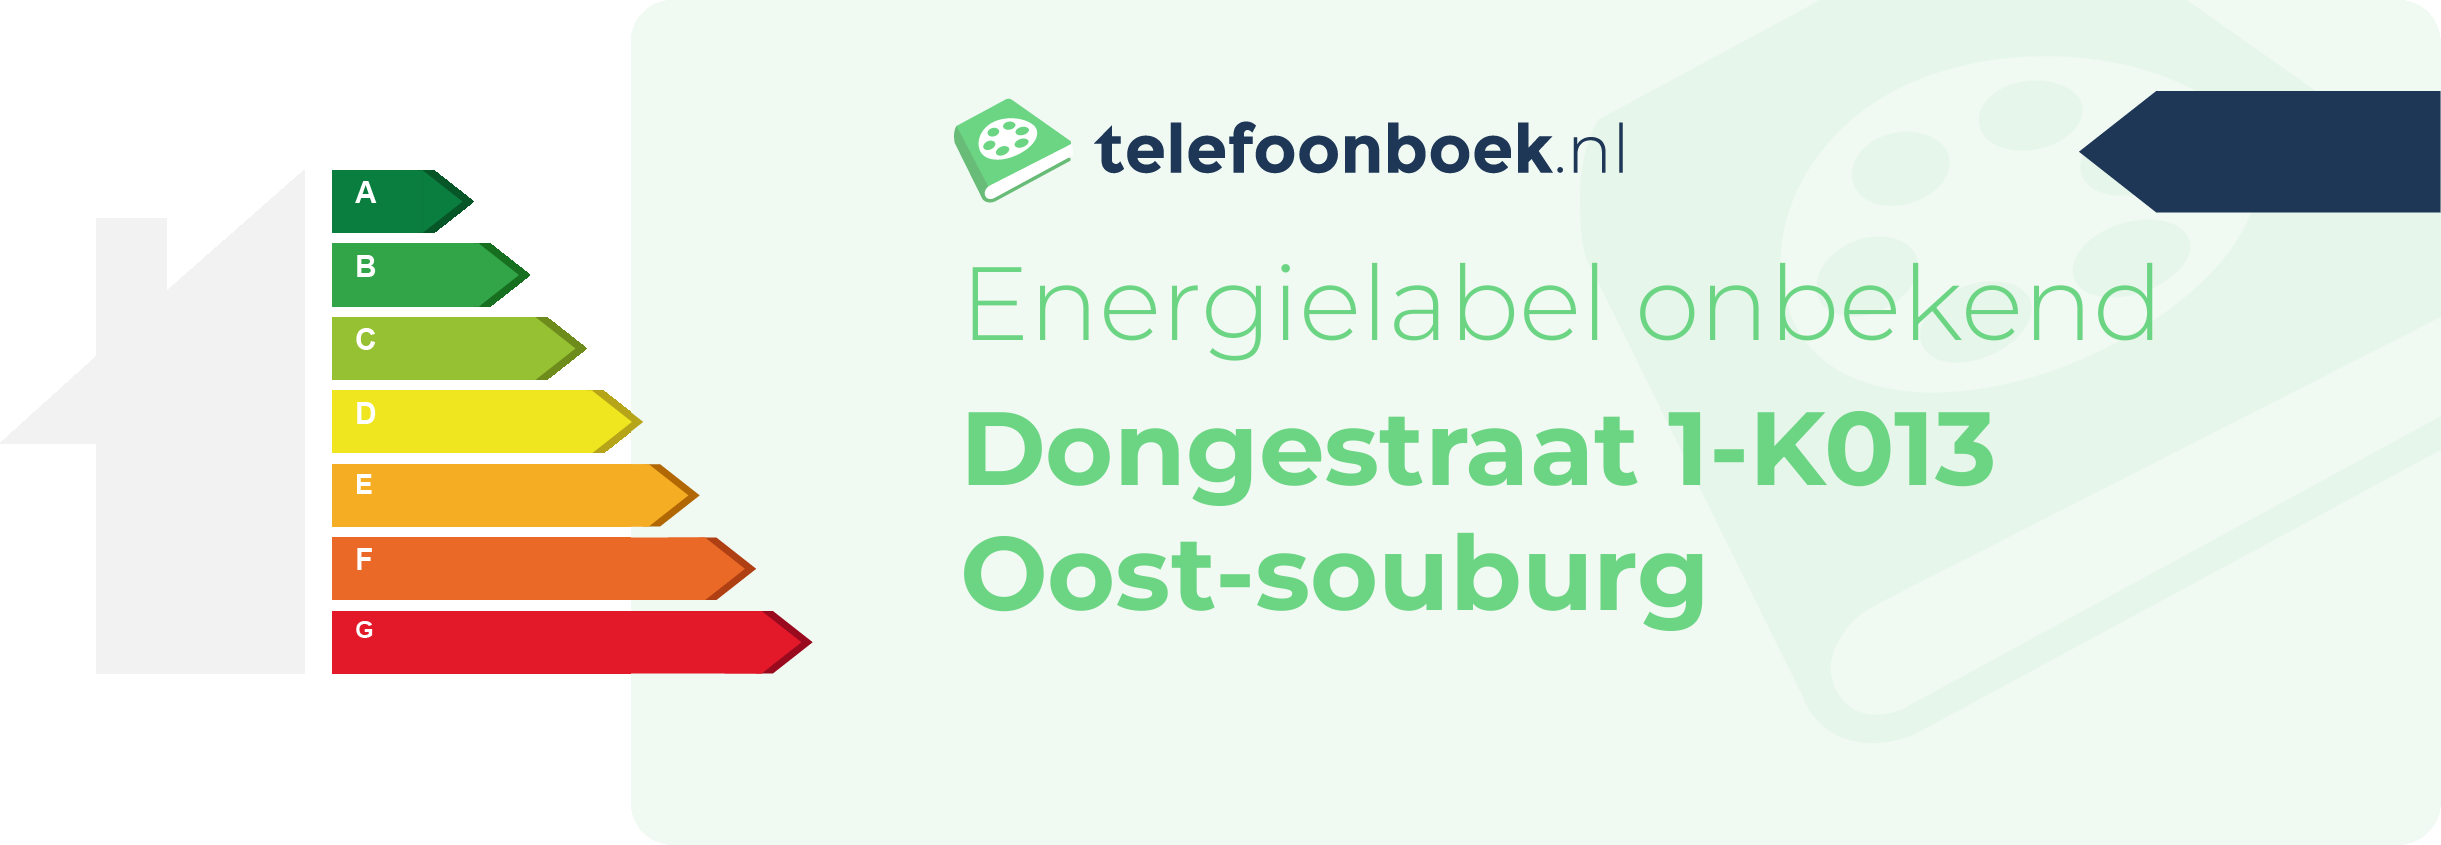 Energielabel Dongestraat 1-K013 Oost-Souburg